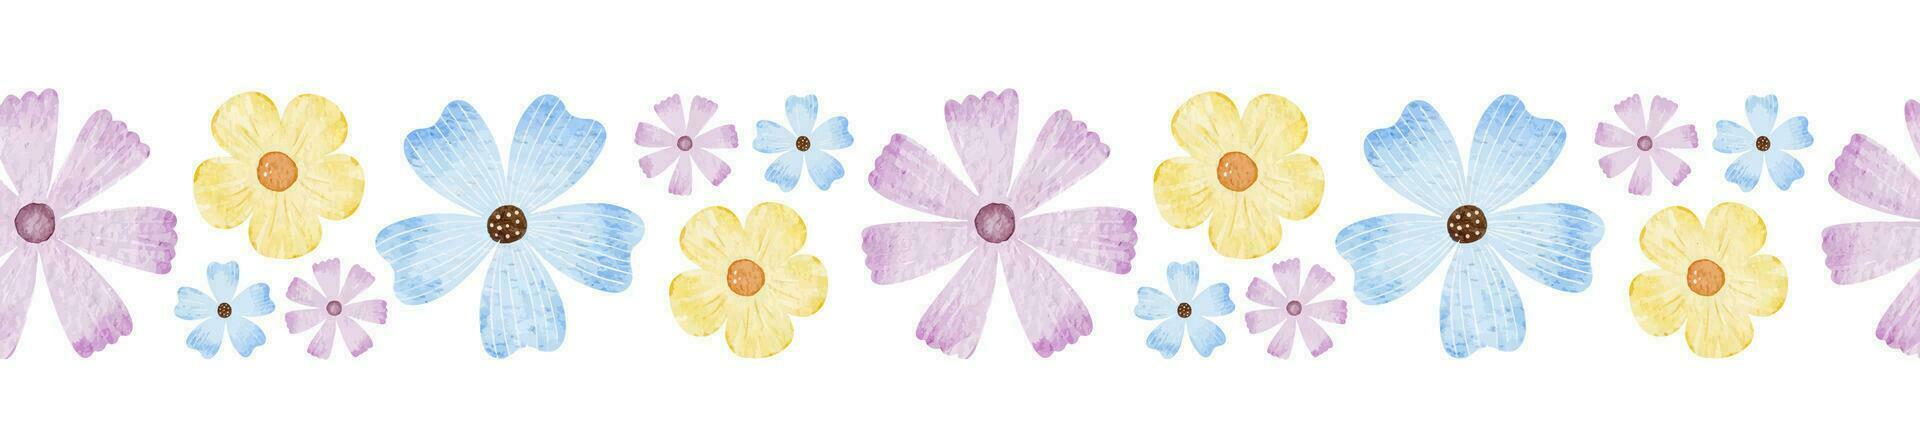 azul, púrpura y amarillo flores silvestres sin costura frontera de sencillo colores. aislado acuarela ilustración. para el diseño de postales, embalaje de bienes, invitaciones, tarjetas vector